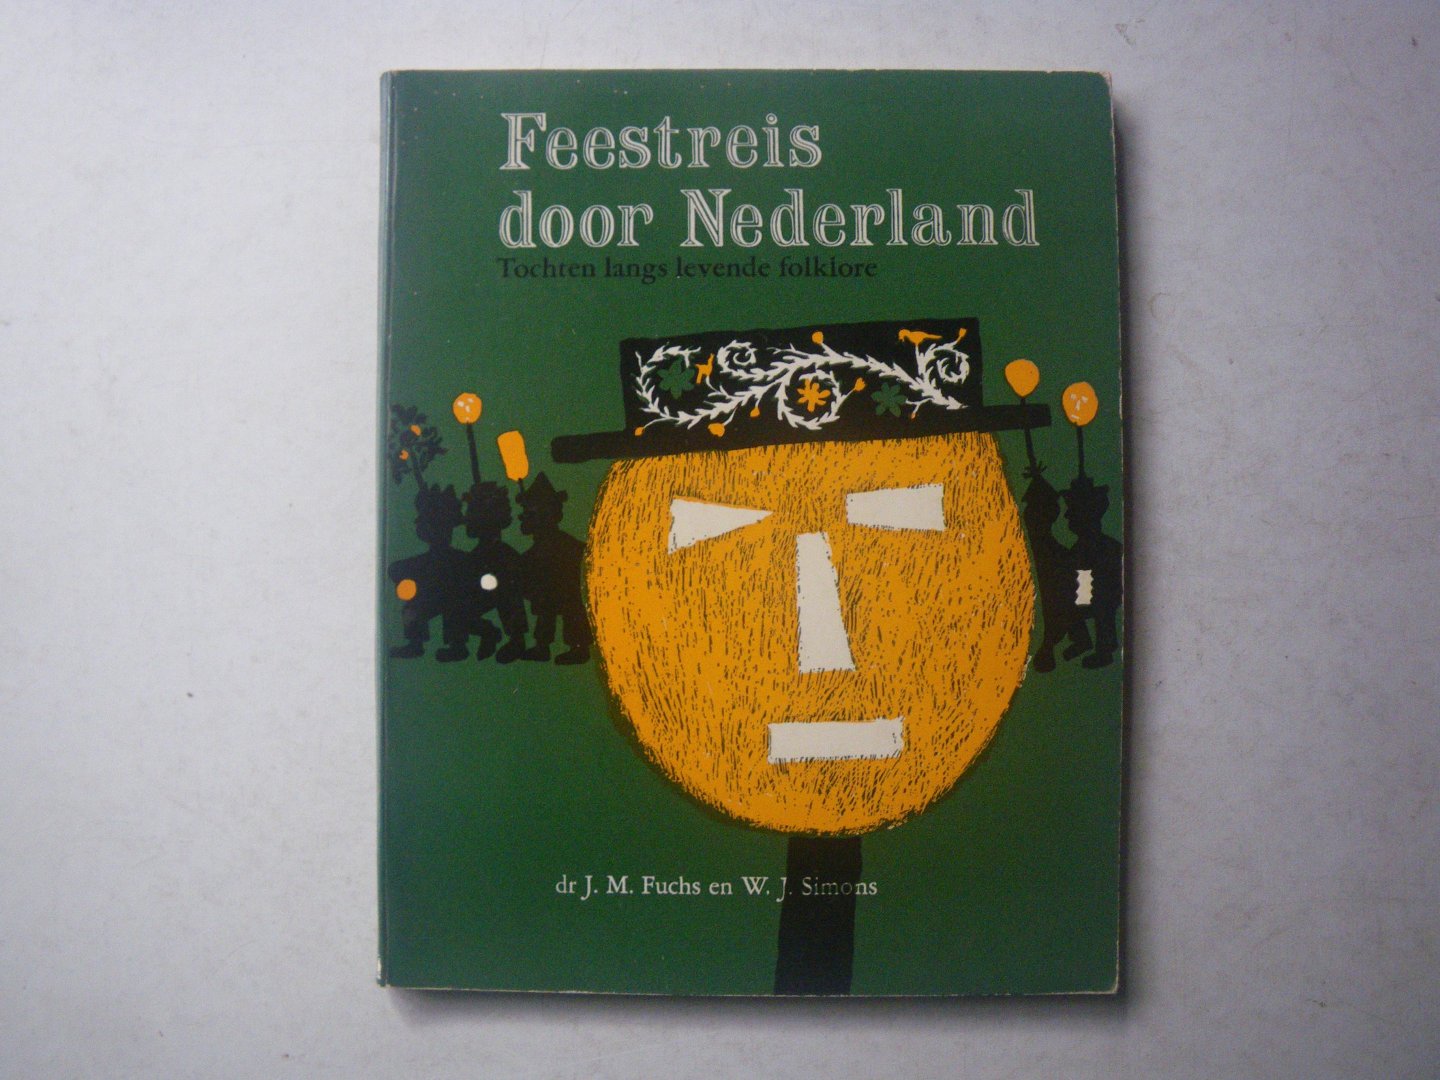 Fuchs, J.M. & Simons, W.J. - Feestreis door Nederland. Tochten langs levende folklore